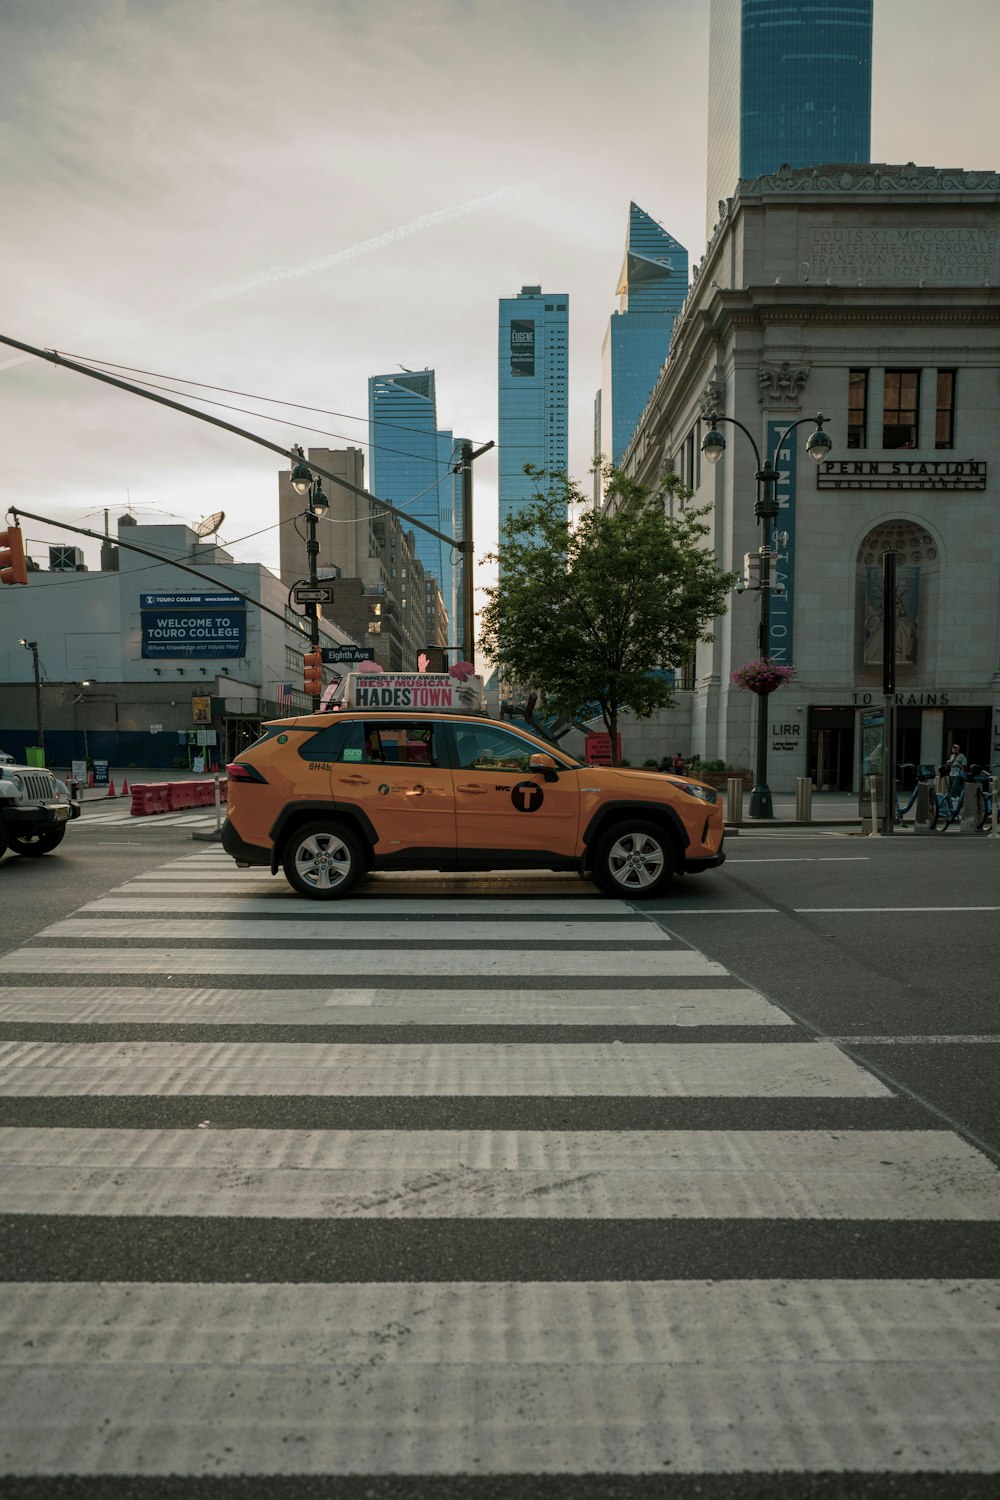 yellow cab on pedestrian lane during daytime